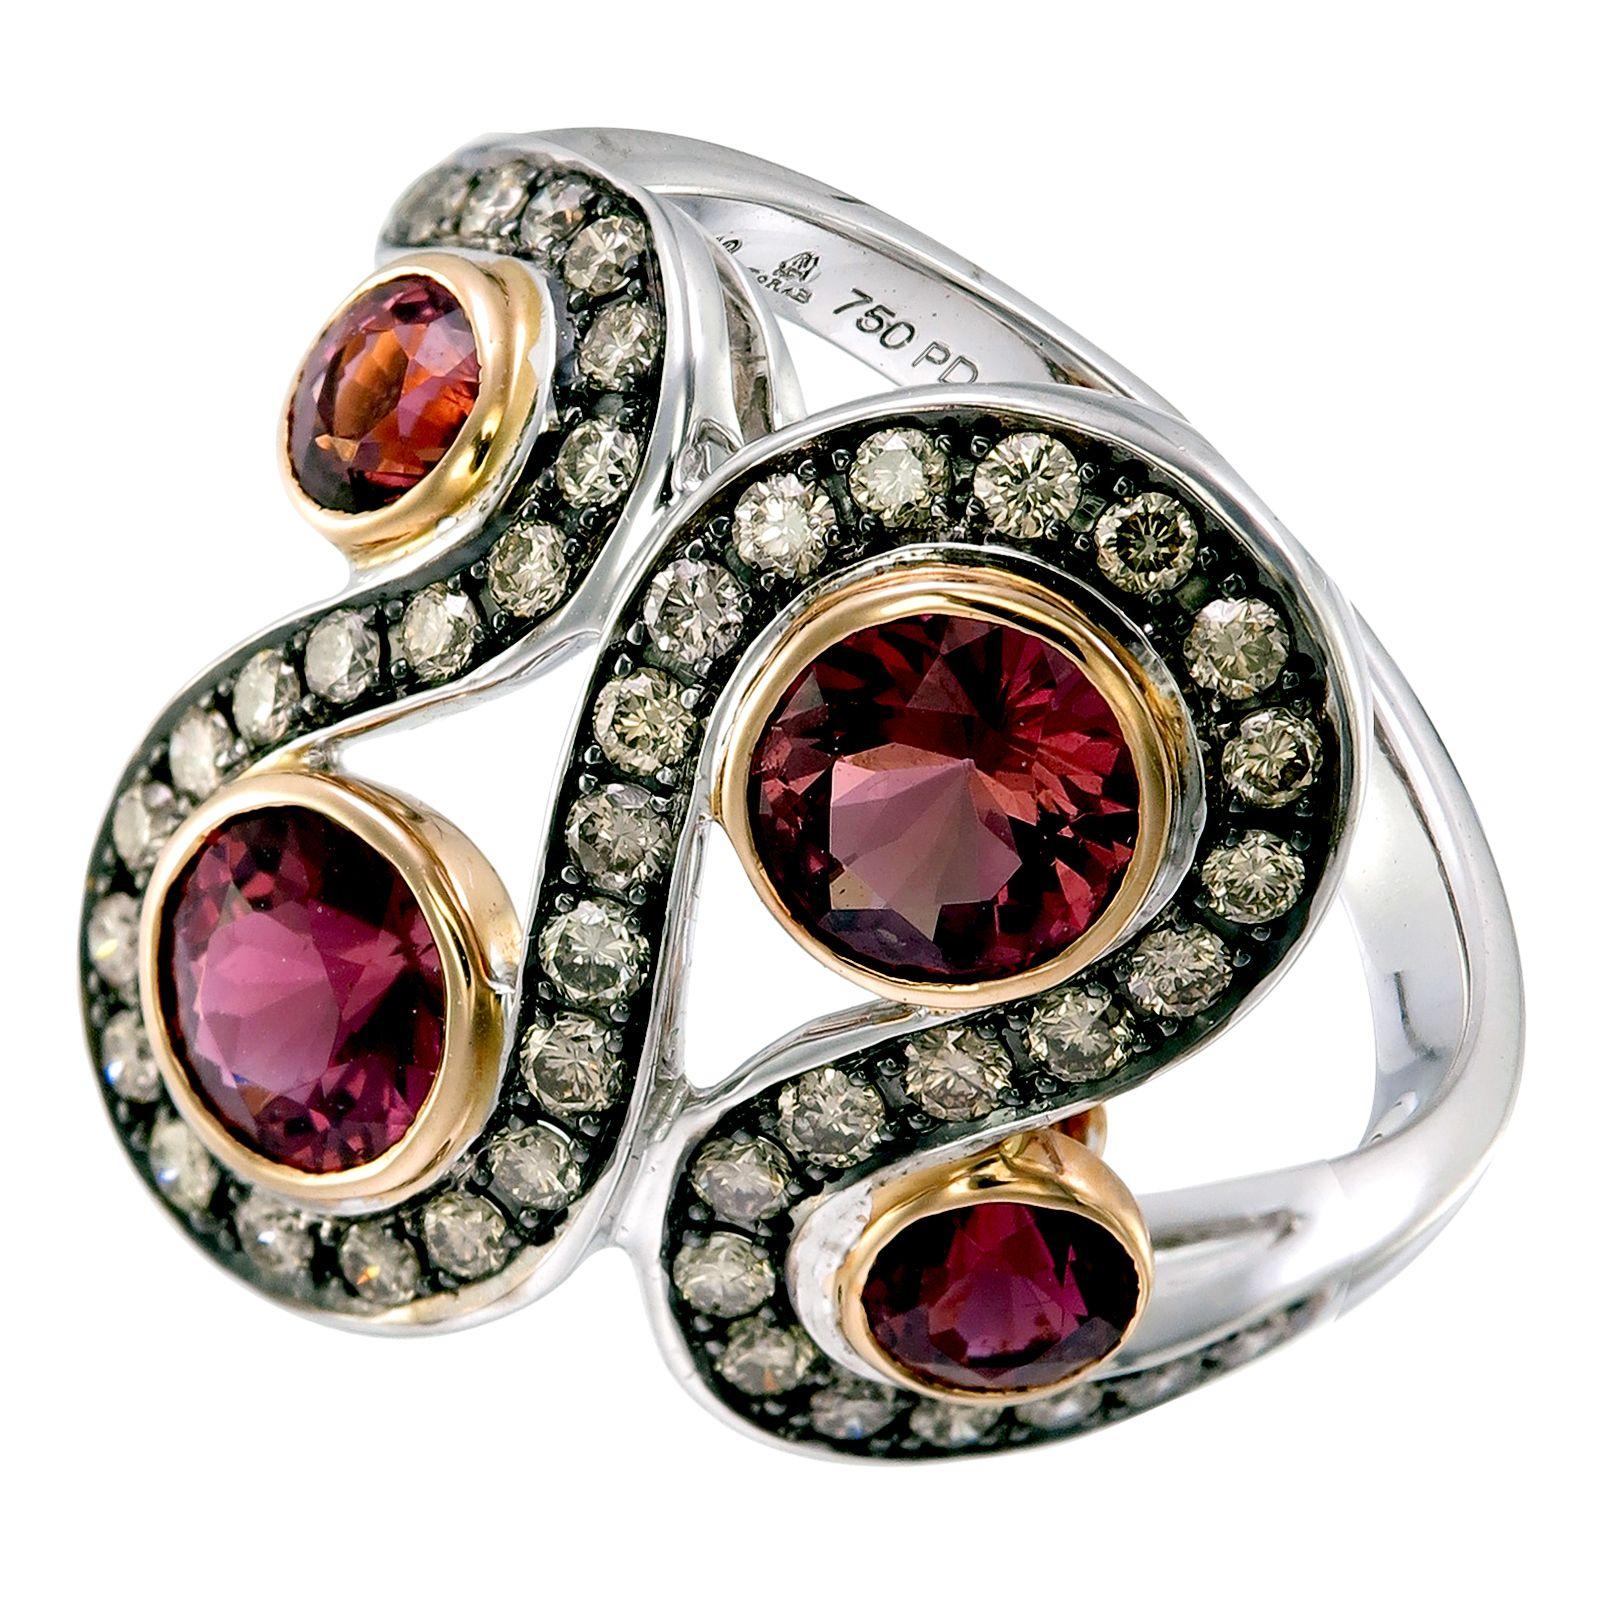 Eine Reihe von 0,65-karätigen Diamanten in geschwungenem 18-karätigem Gold und Palladium wird von vier runden 2,07-karätigen rosafarbenen Turmalinen umrahmt, die ein außergewöhnliches Kunstwerk darstellen. 

Dieser Ring wird, wie alle Stücke von